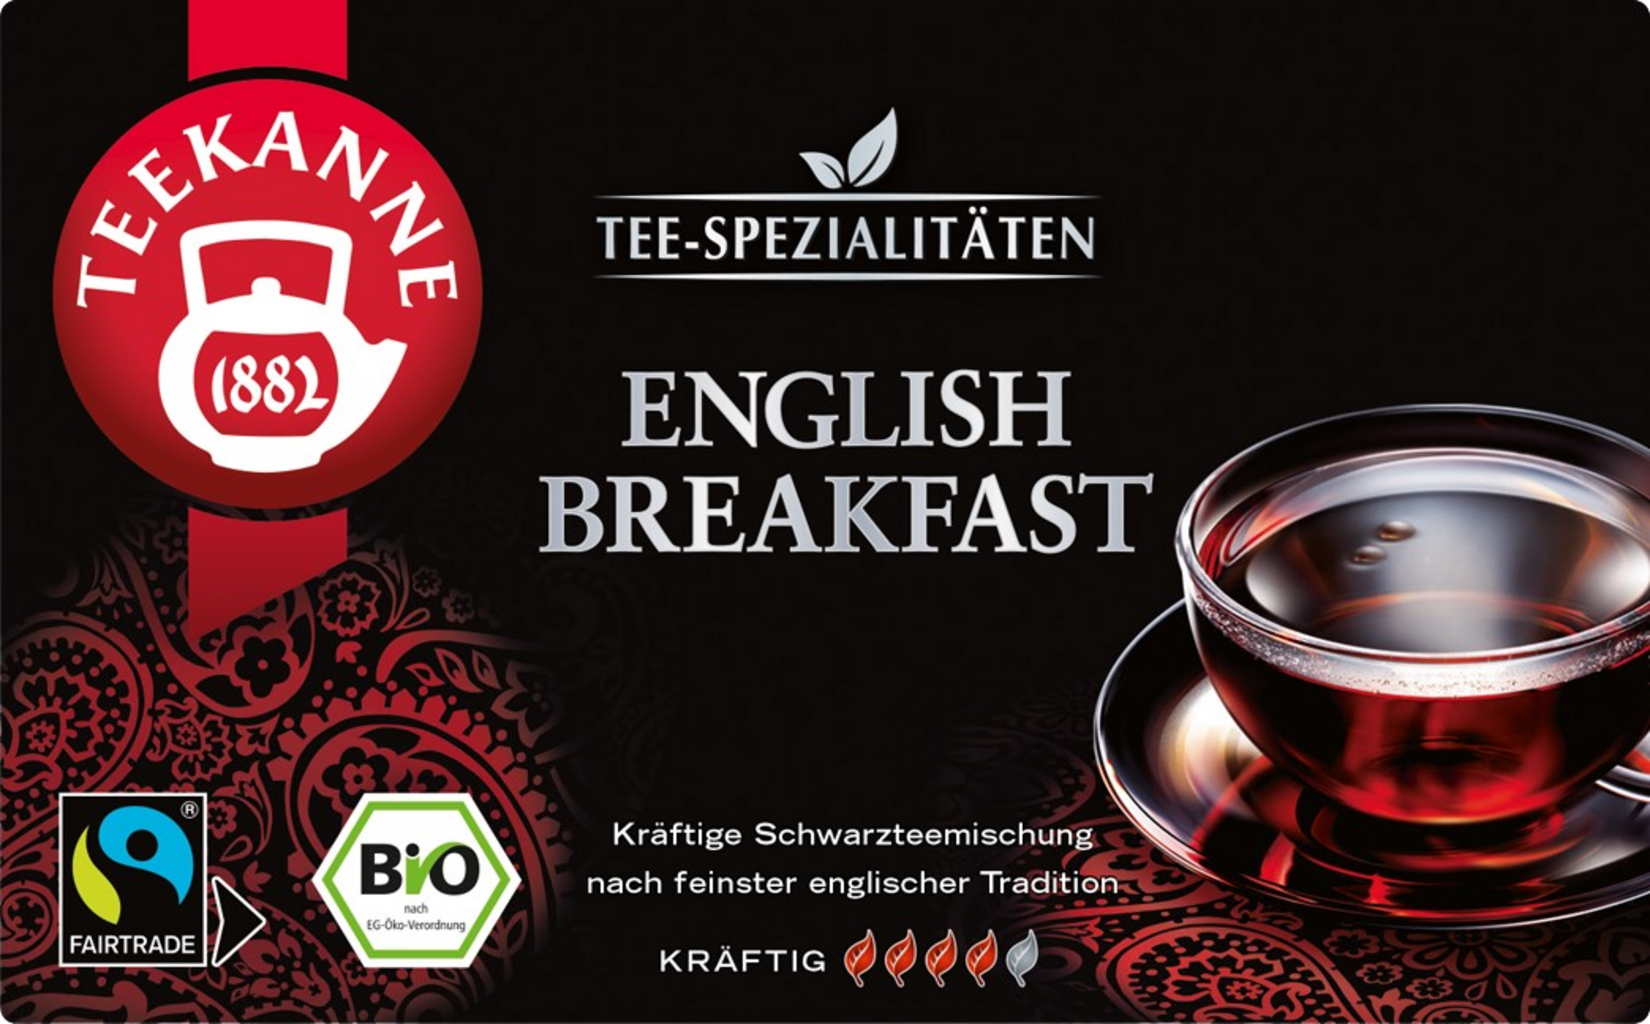 TEEKANNE English Breakfast Specialty Tea - Organic, Fairtrade